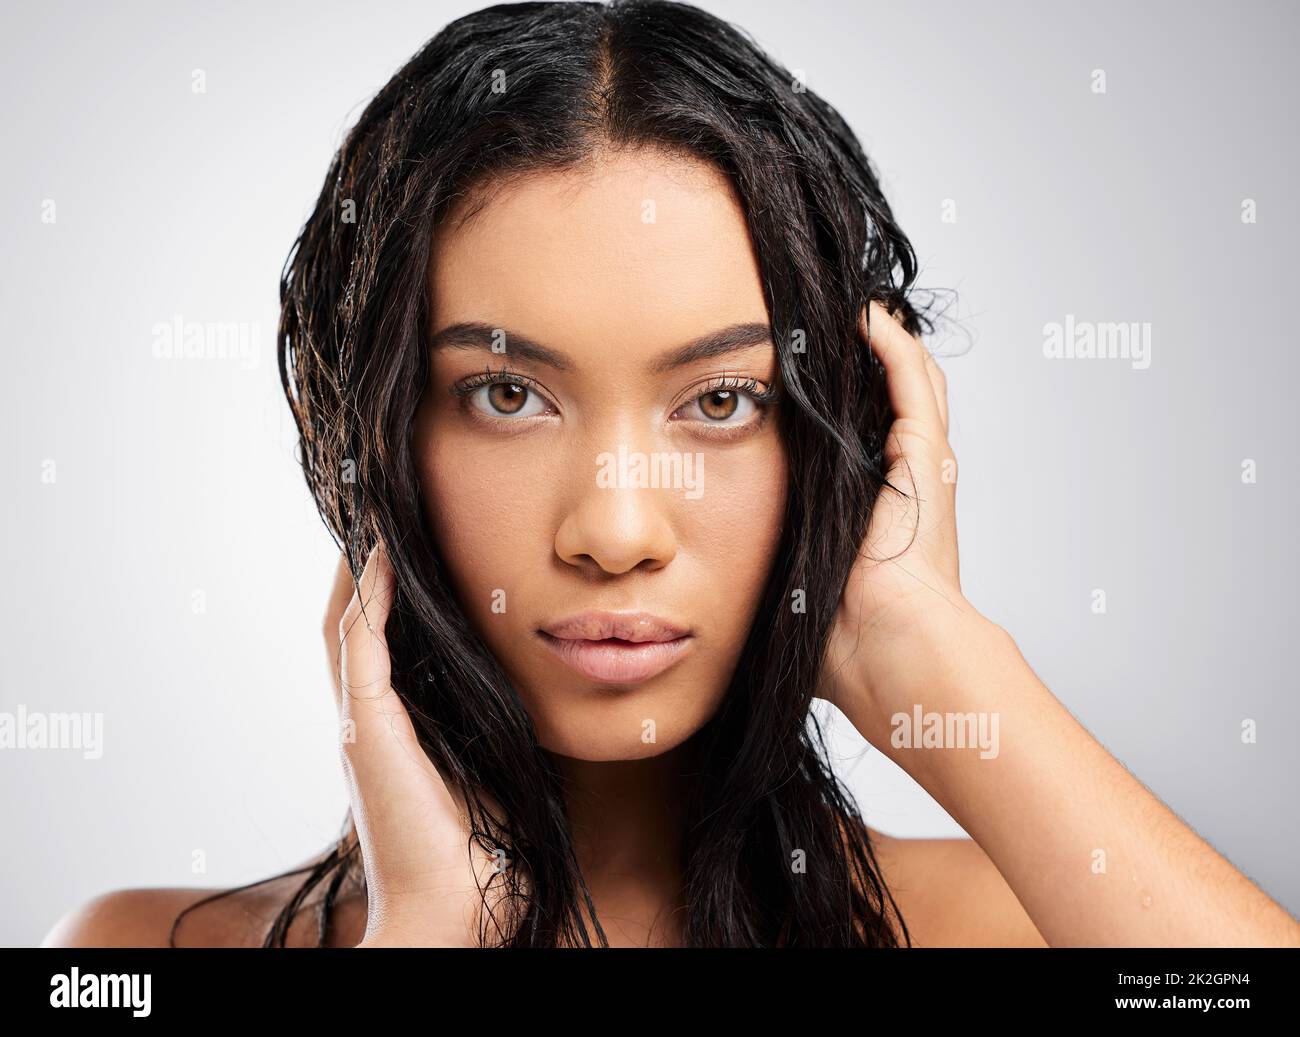 Mühelos schön. Beschnittenes Porträt einer attraktiven jungen Frau, die im Studio vor grauem Hintergrund posiert. Stockfoto